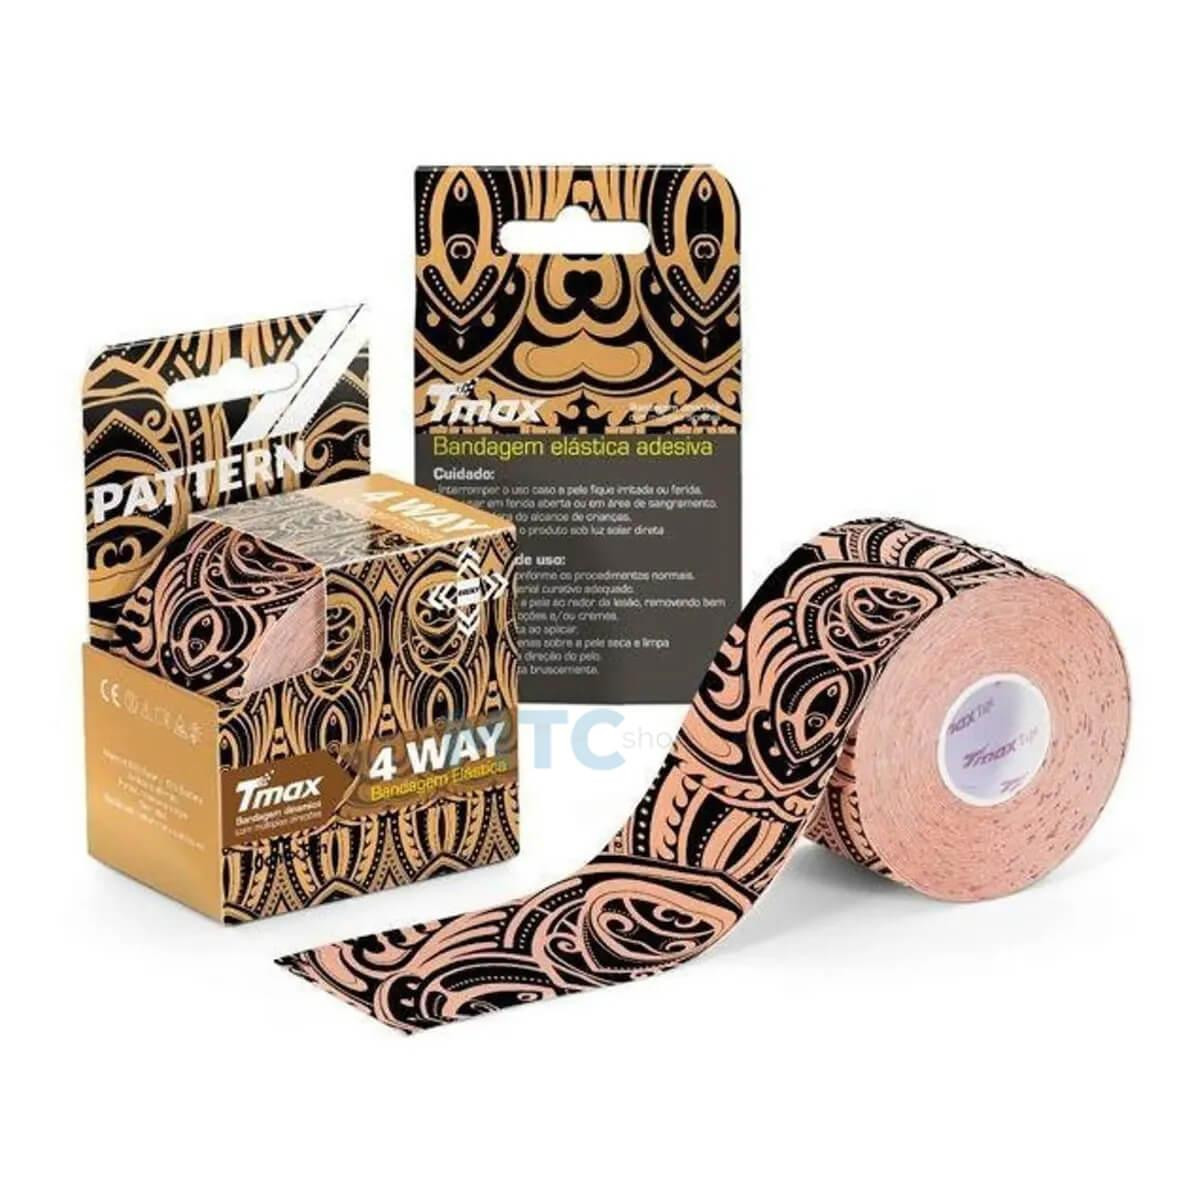 Bandagem Elástica Adesiva - Kinesio - TMAX 4 Way Tape